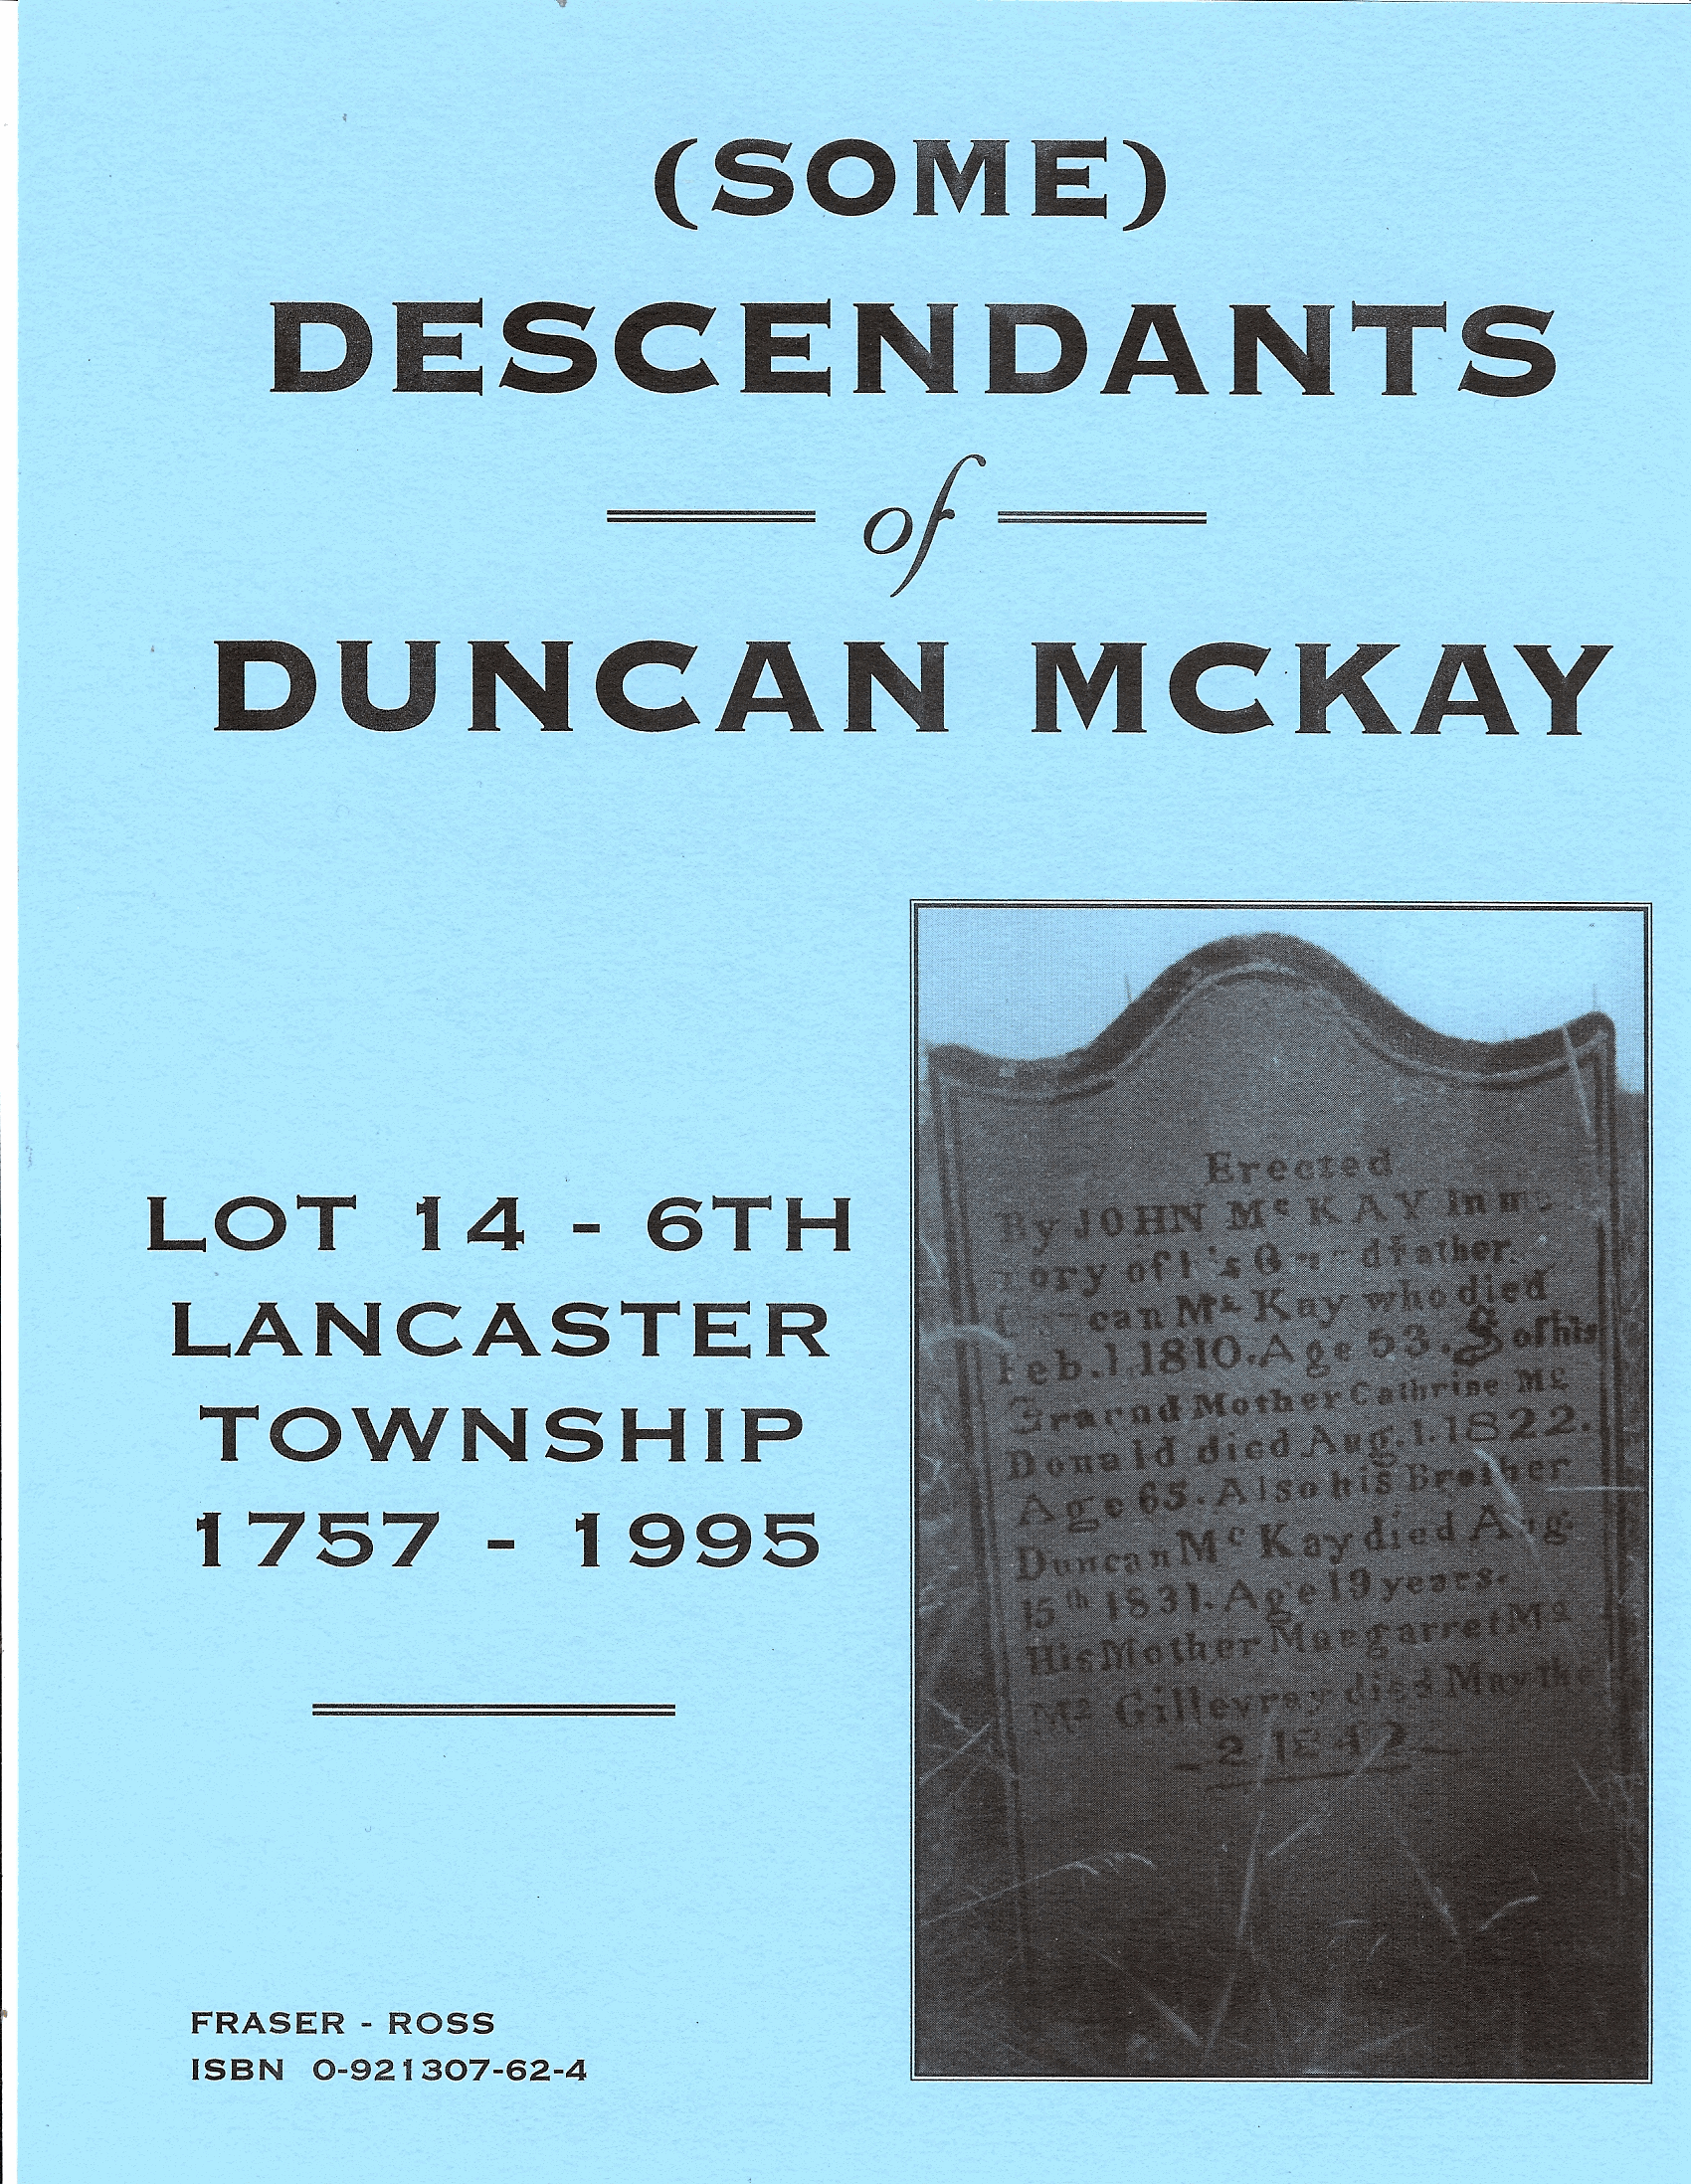 duncan mckay 1757-1995